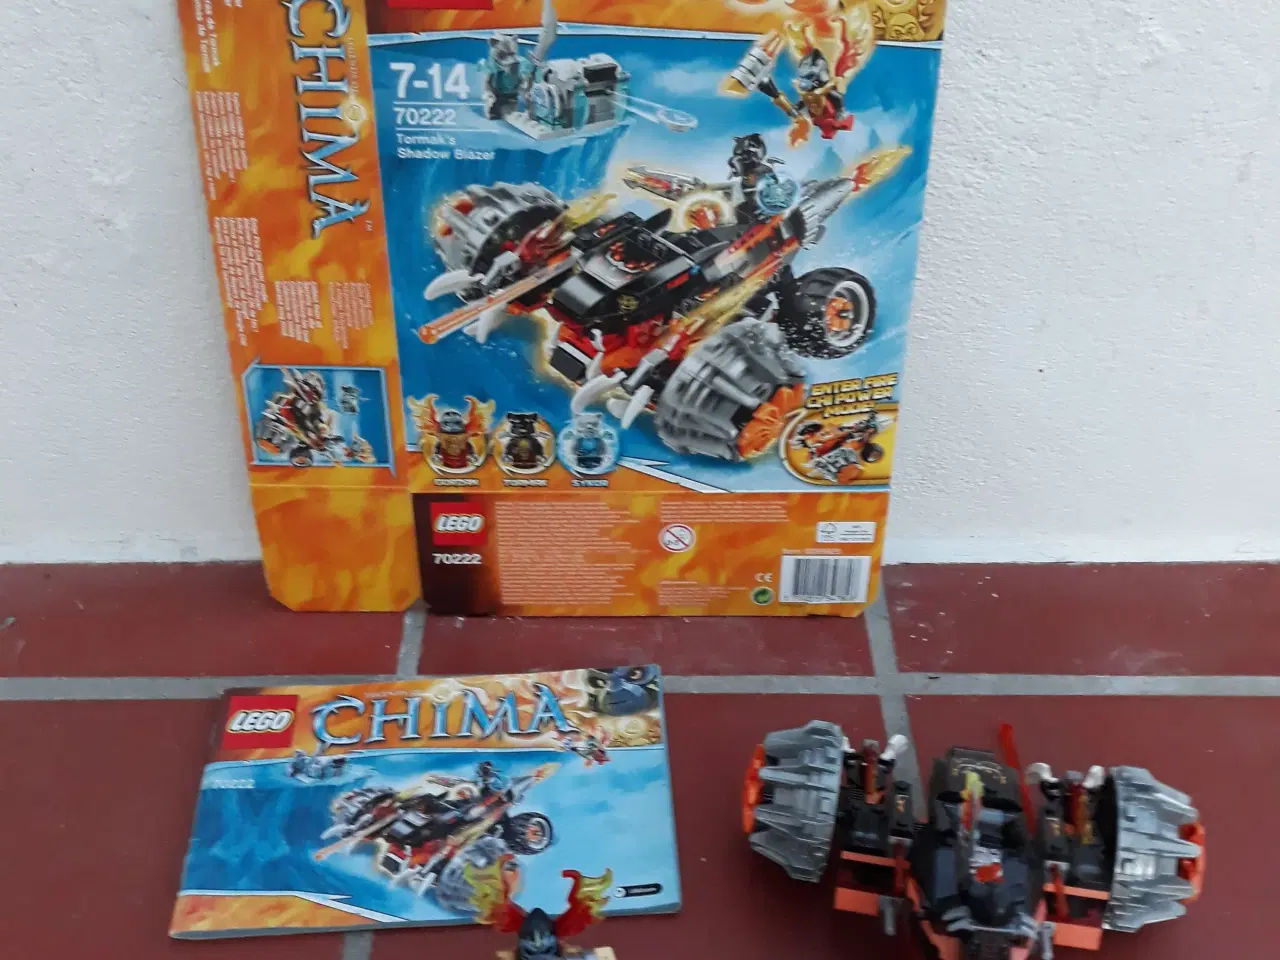 Billede 2 - Lego Chima, 70222